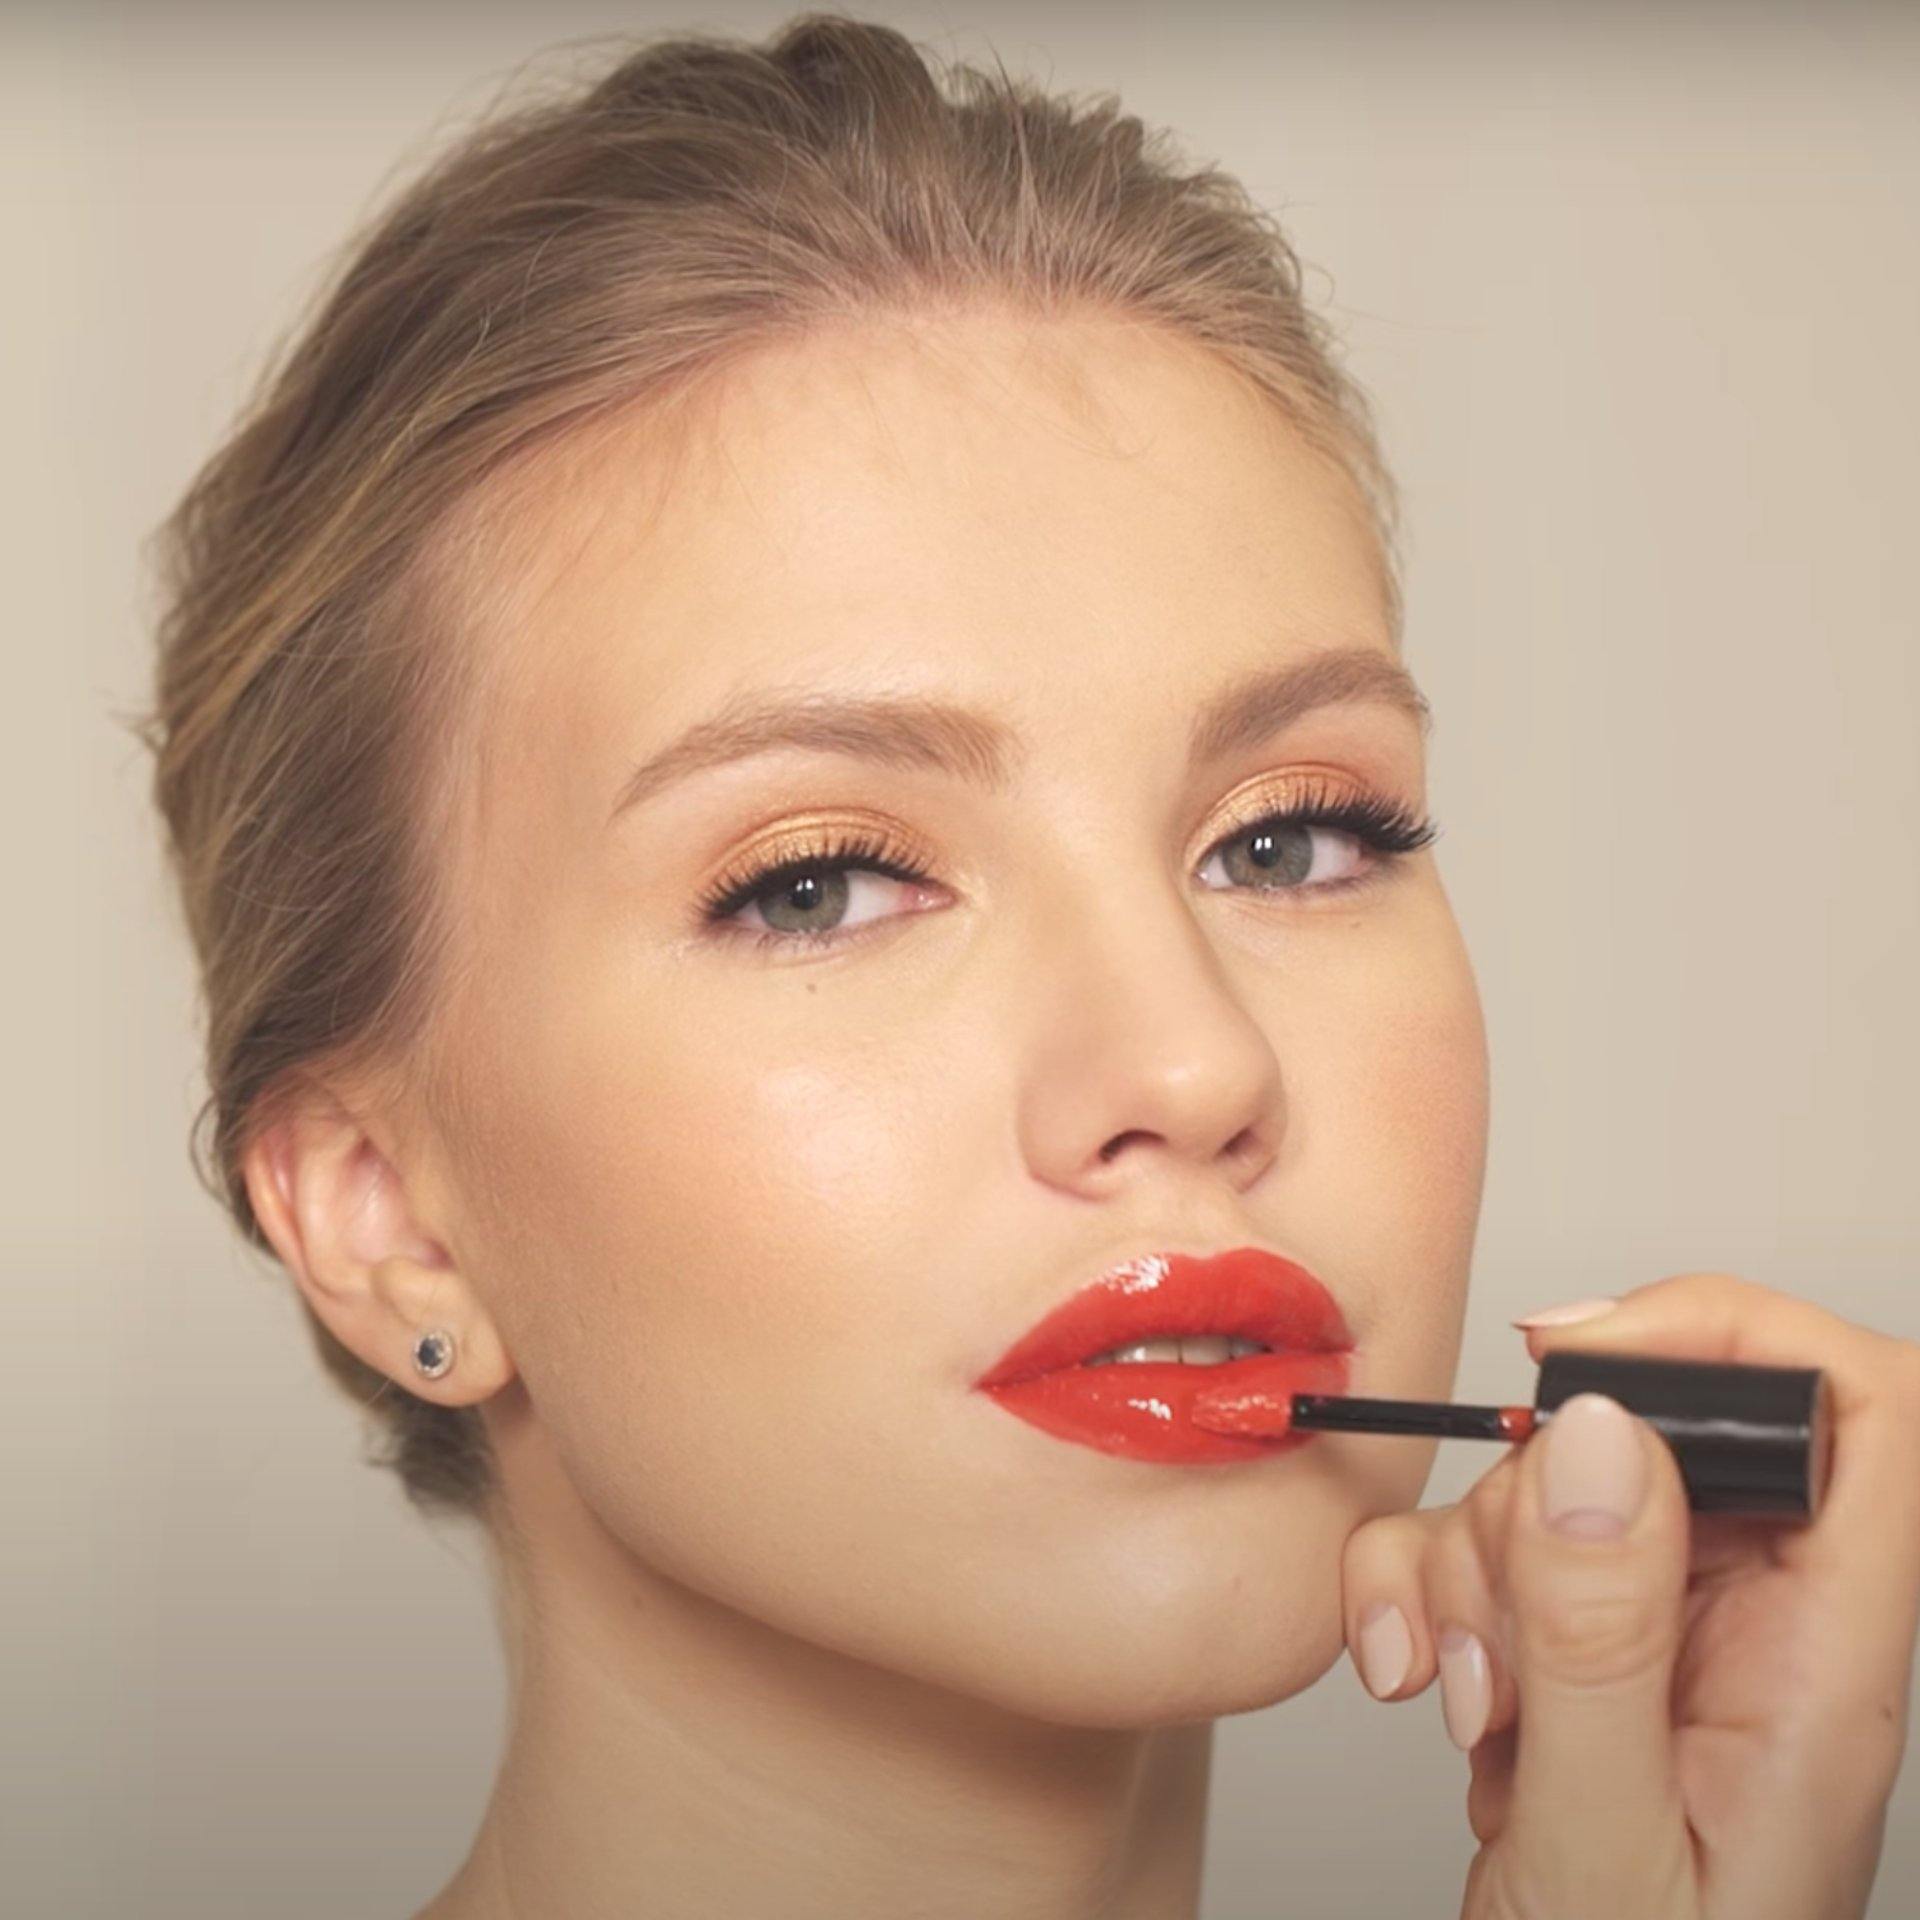 Vinyl effect lips makeup - Romanovamakeup